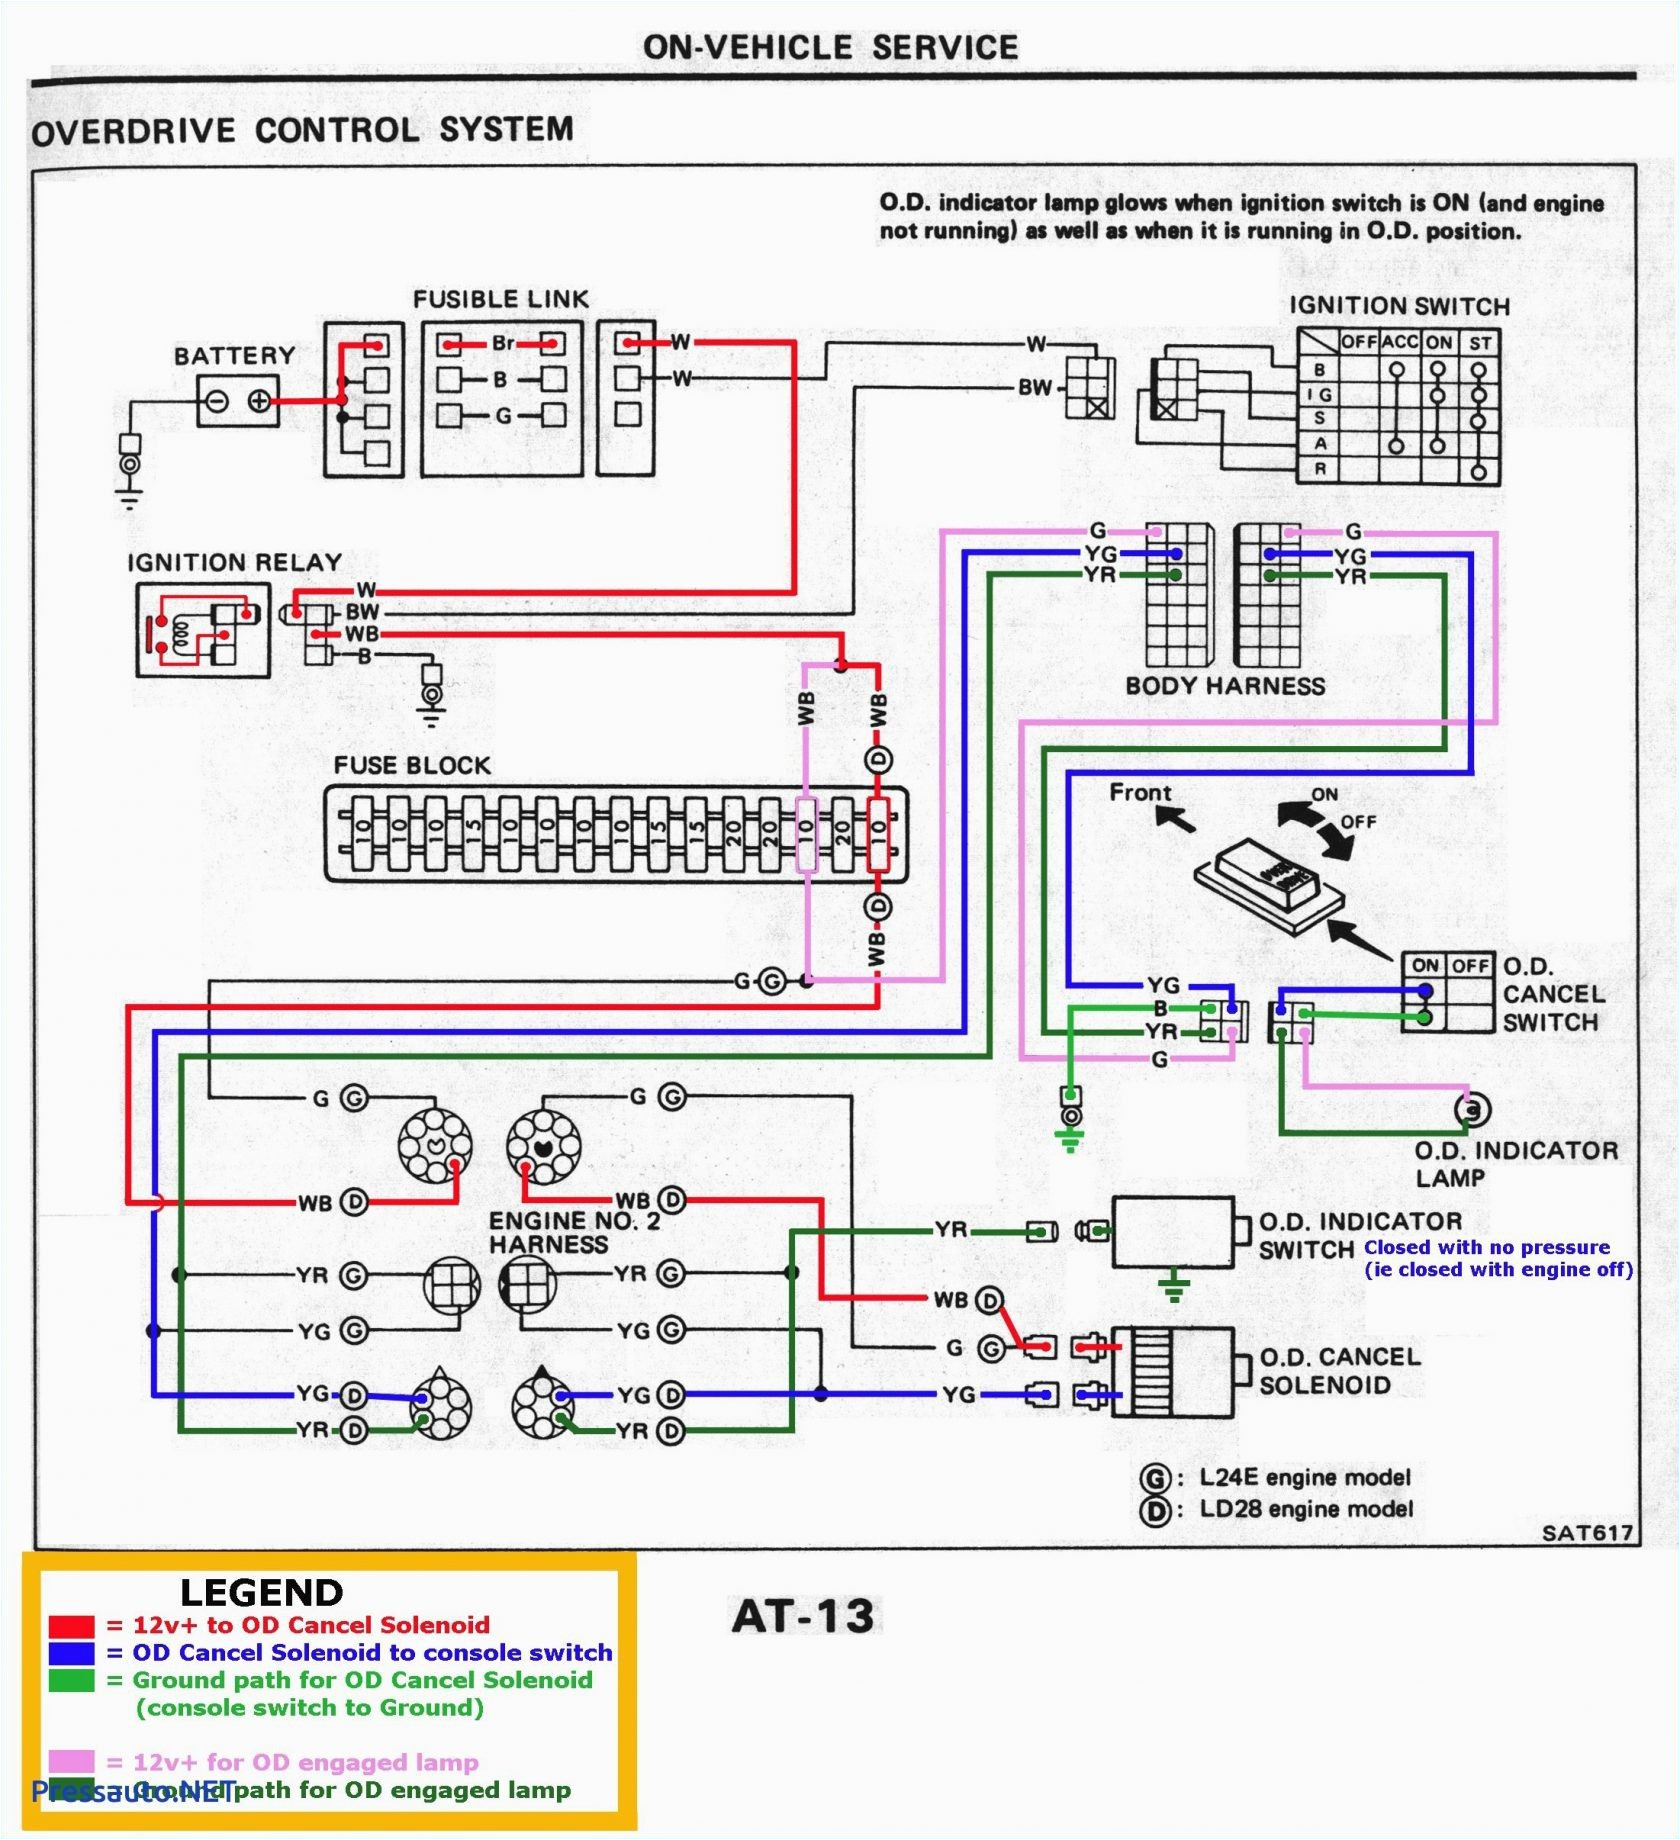 Subaru Wiring Diagram Color Codes Subaru Color Code Wiring Diagram Wiring Diagrams